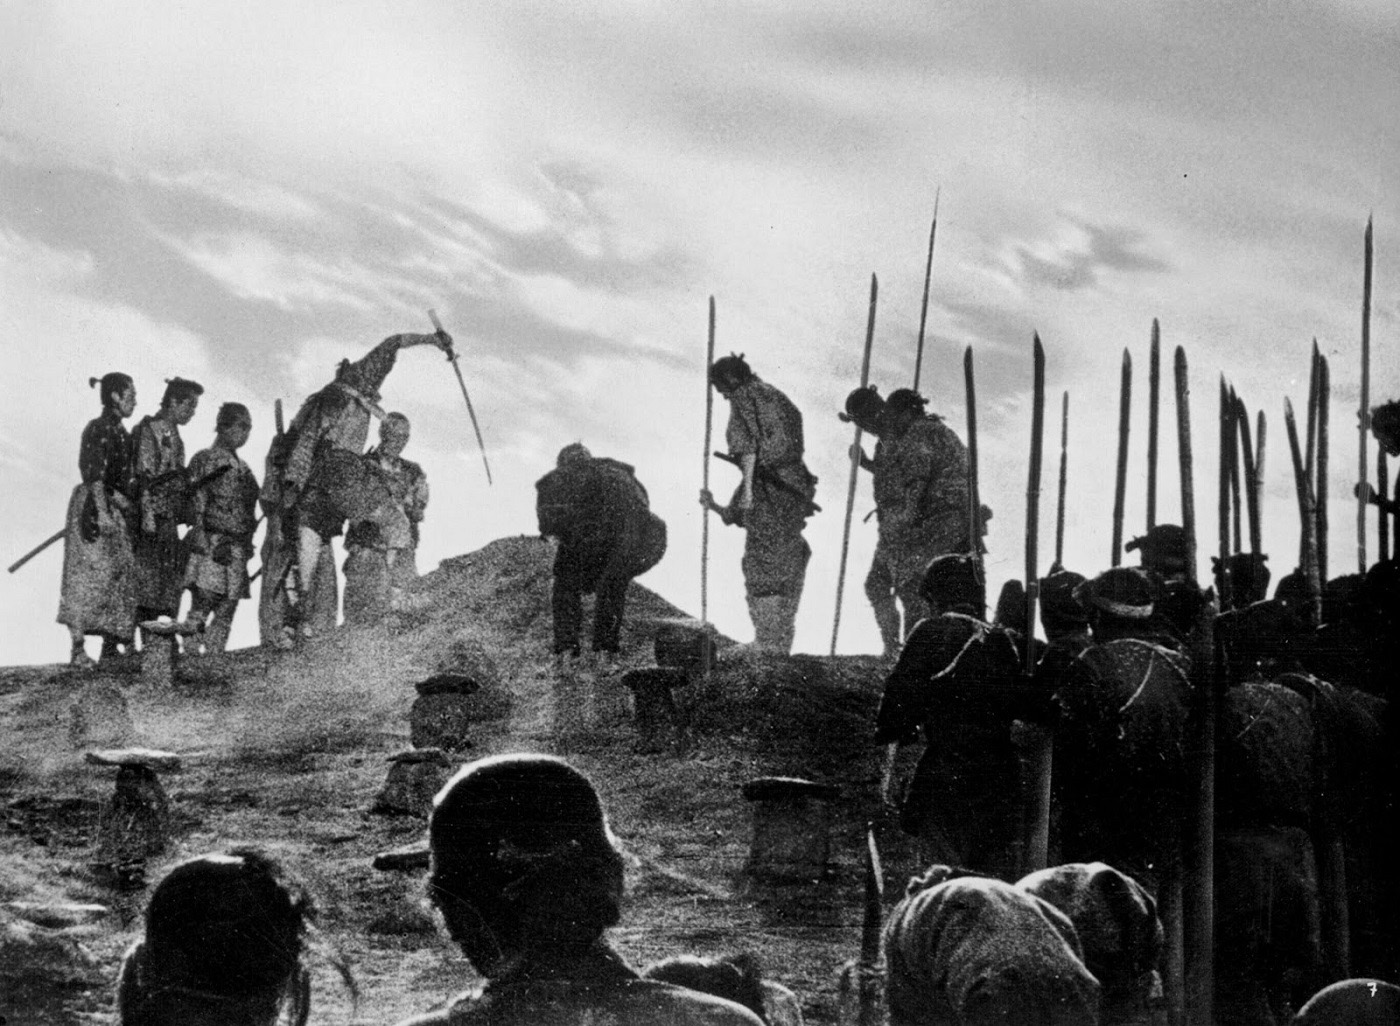 CuadroXCuadro: ‘Los siete samuráis’ o la primera película de acción de la historia